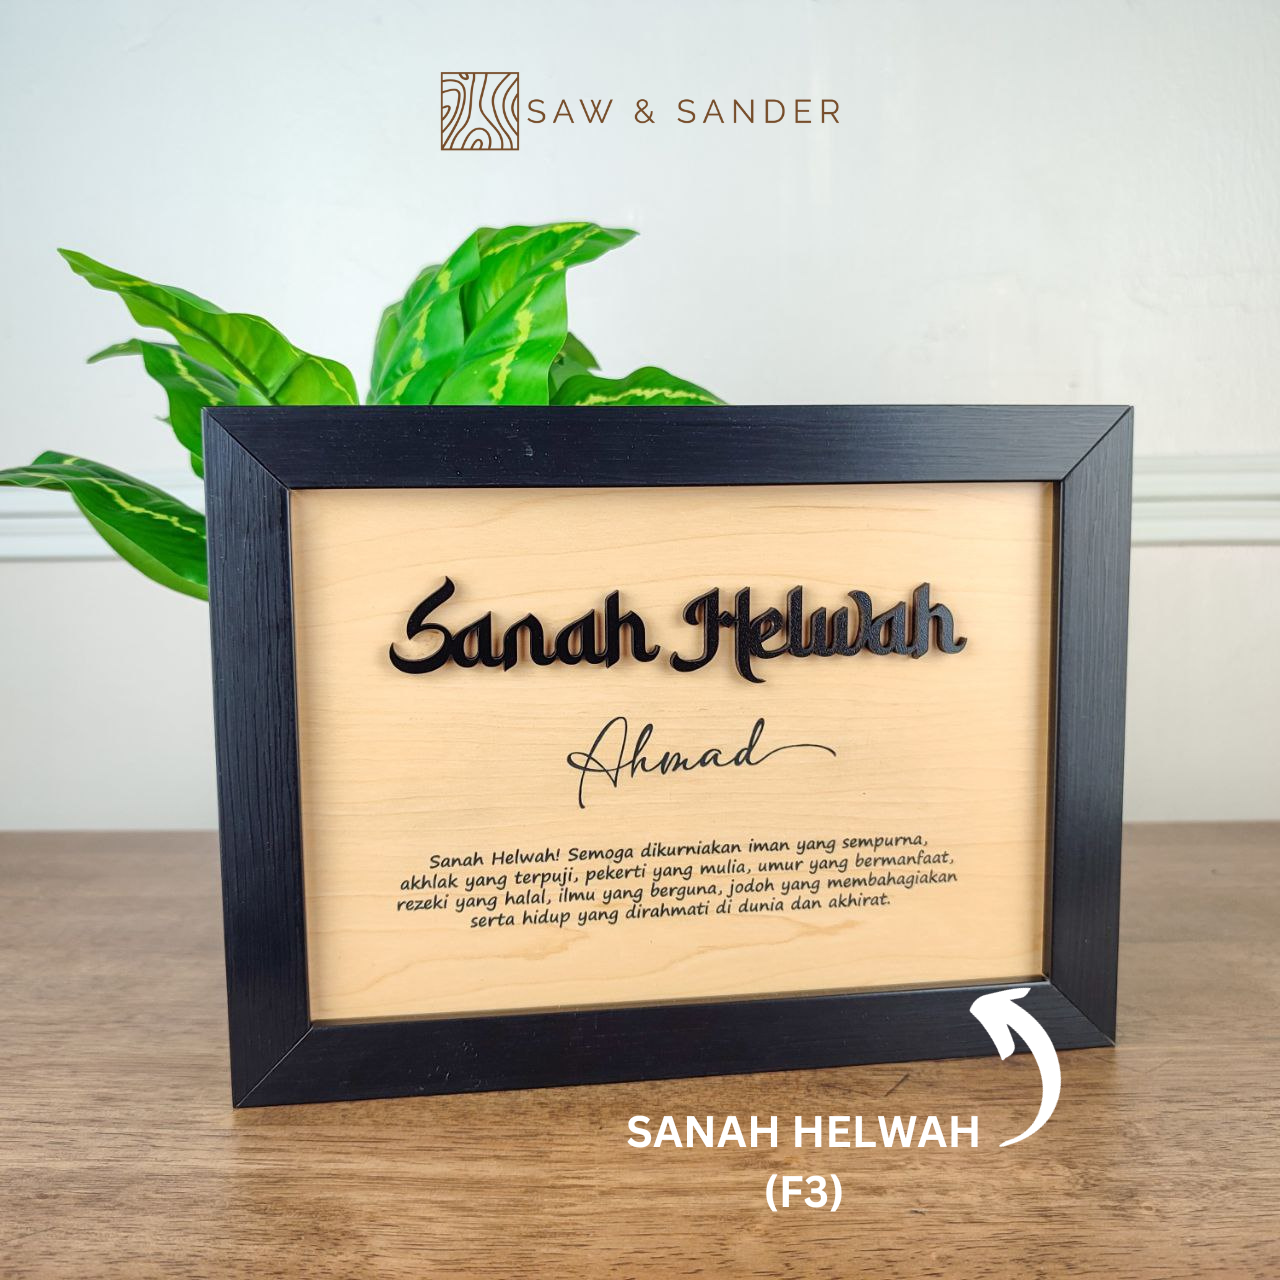 SANAH HELWAH (F3)